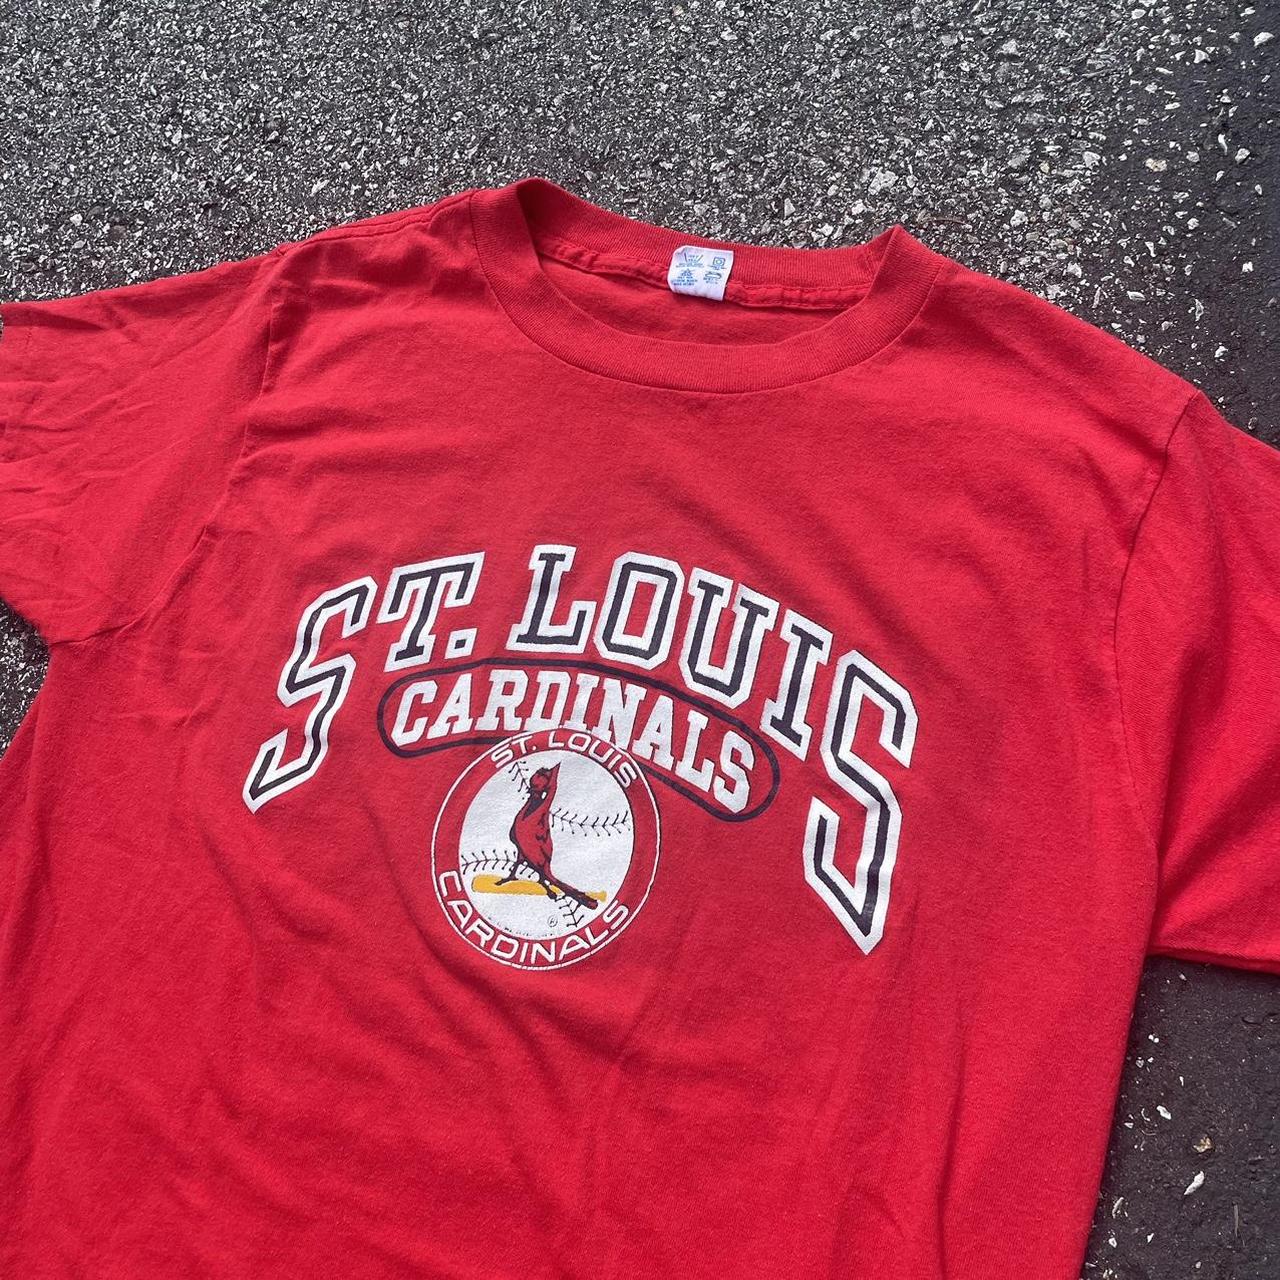 Vintage CHAMPION St. Louis Cardinals Single Stitch T Shirt Large